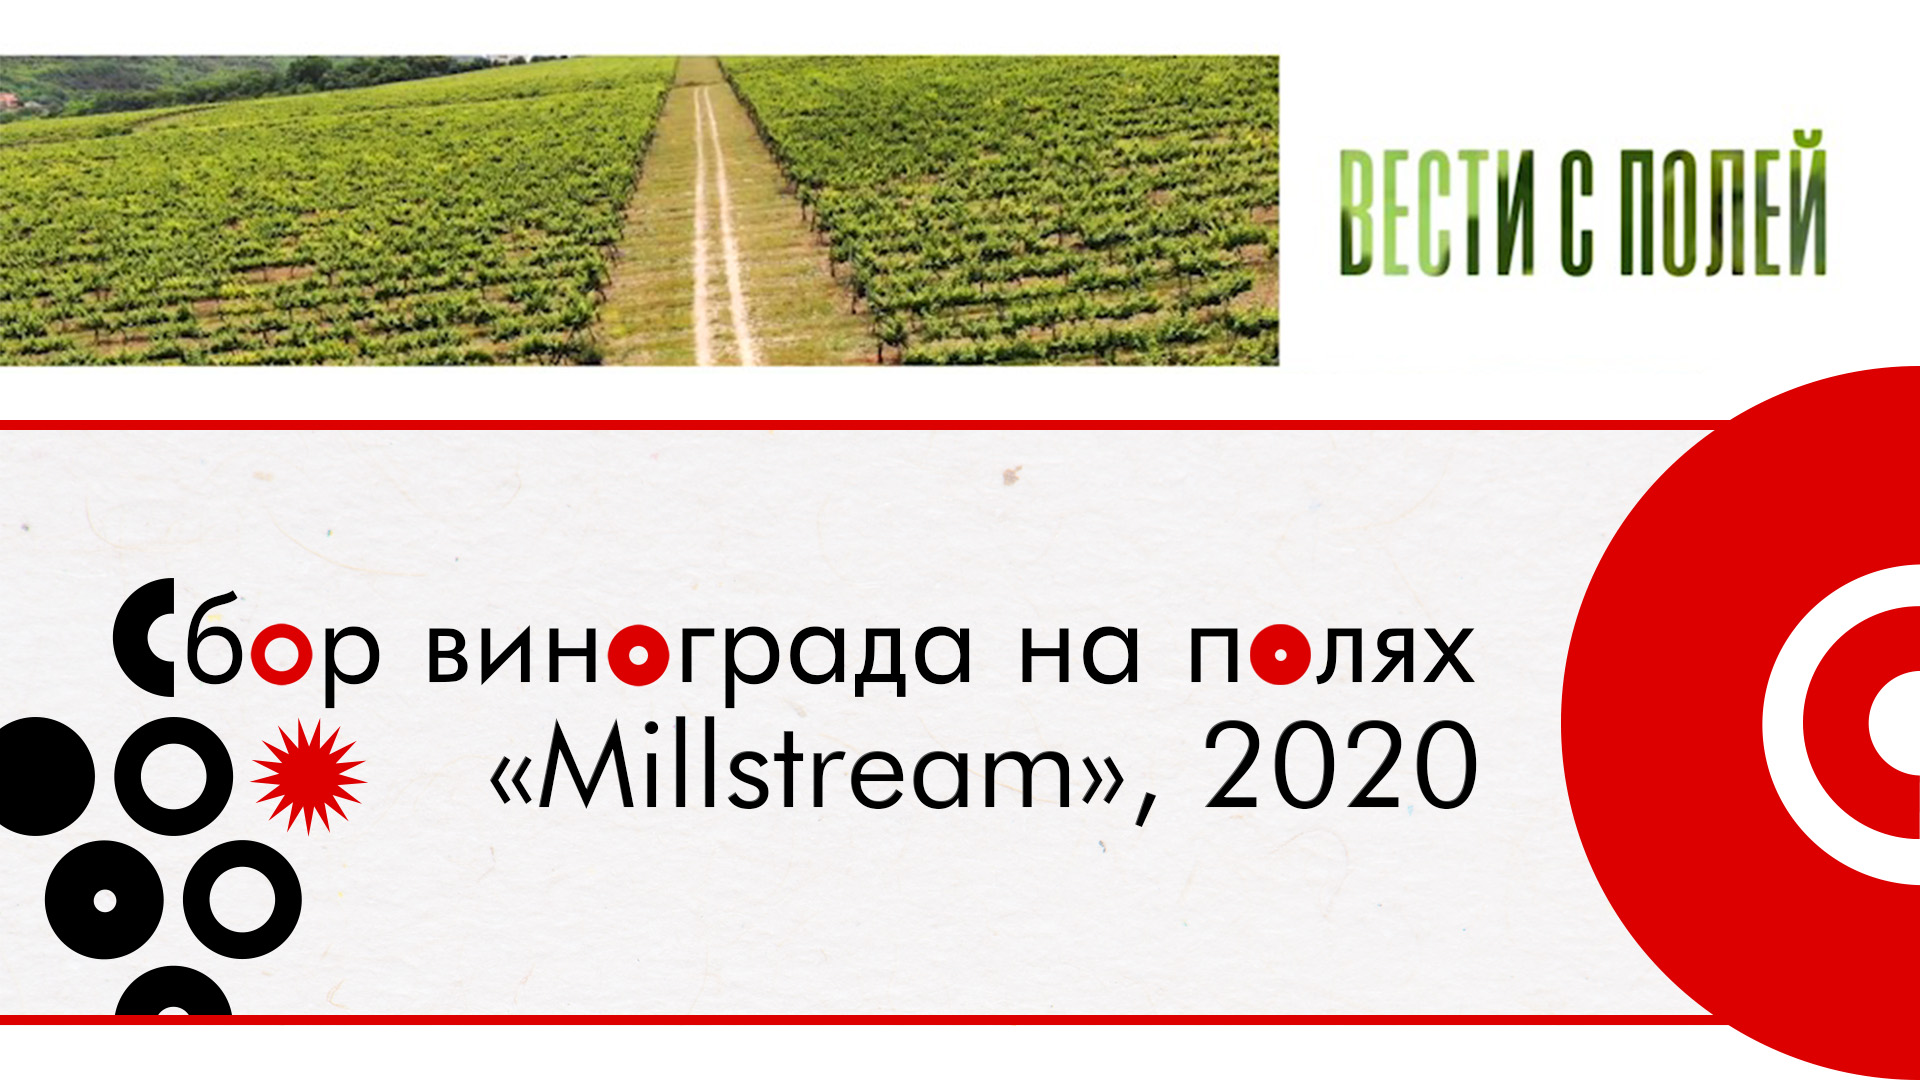 Вести с полей №5. Сбор винограда на полях «Мильстрим», 2020